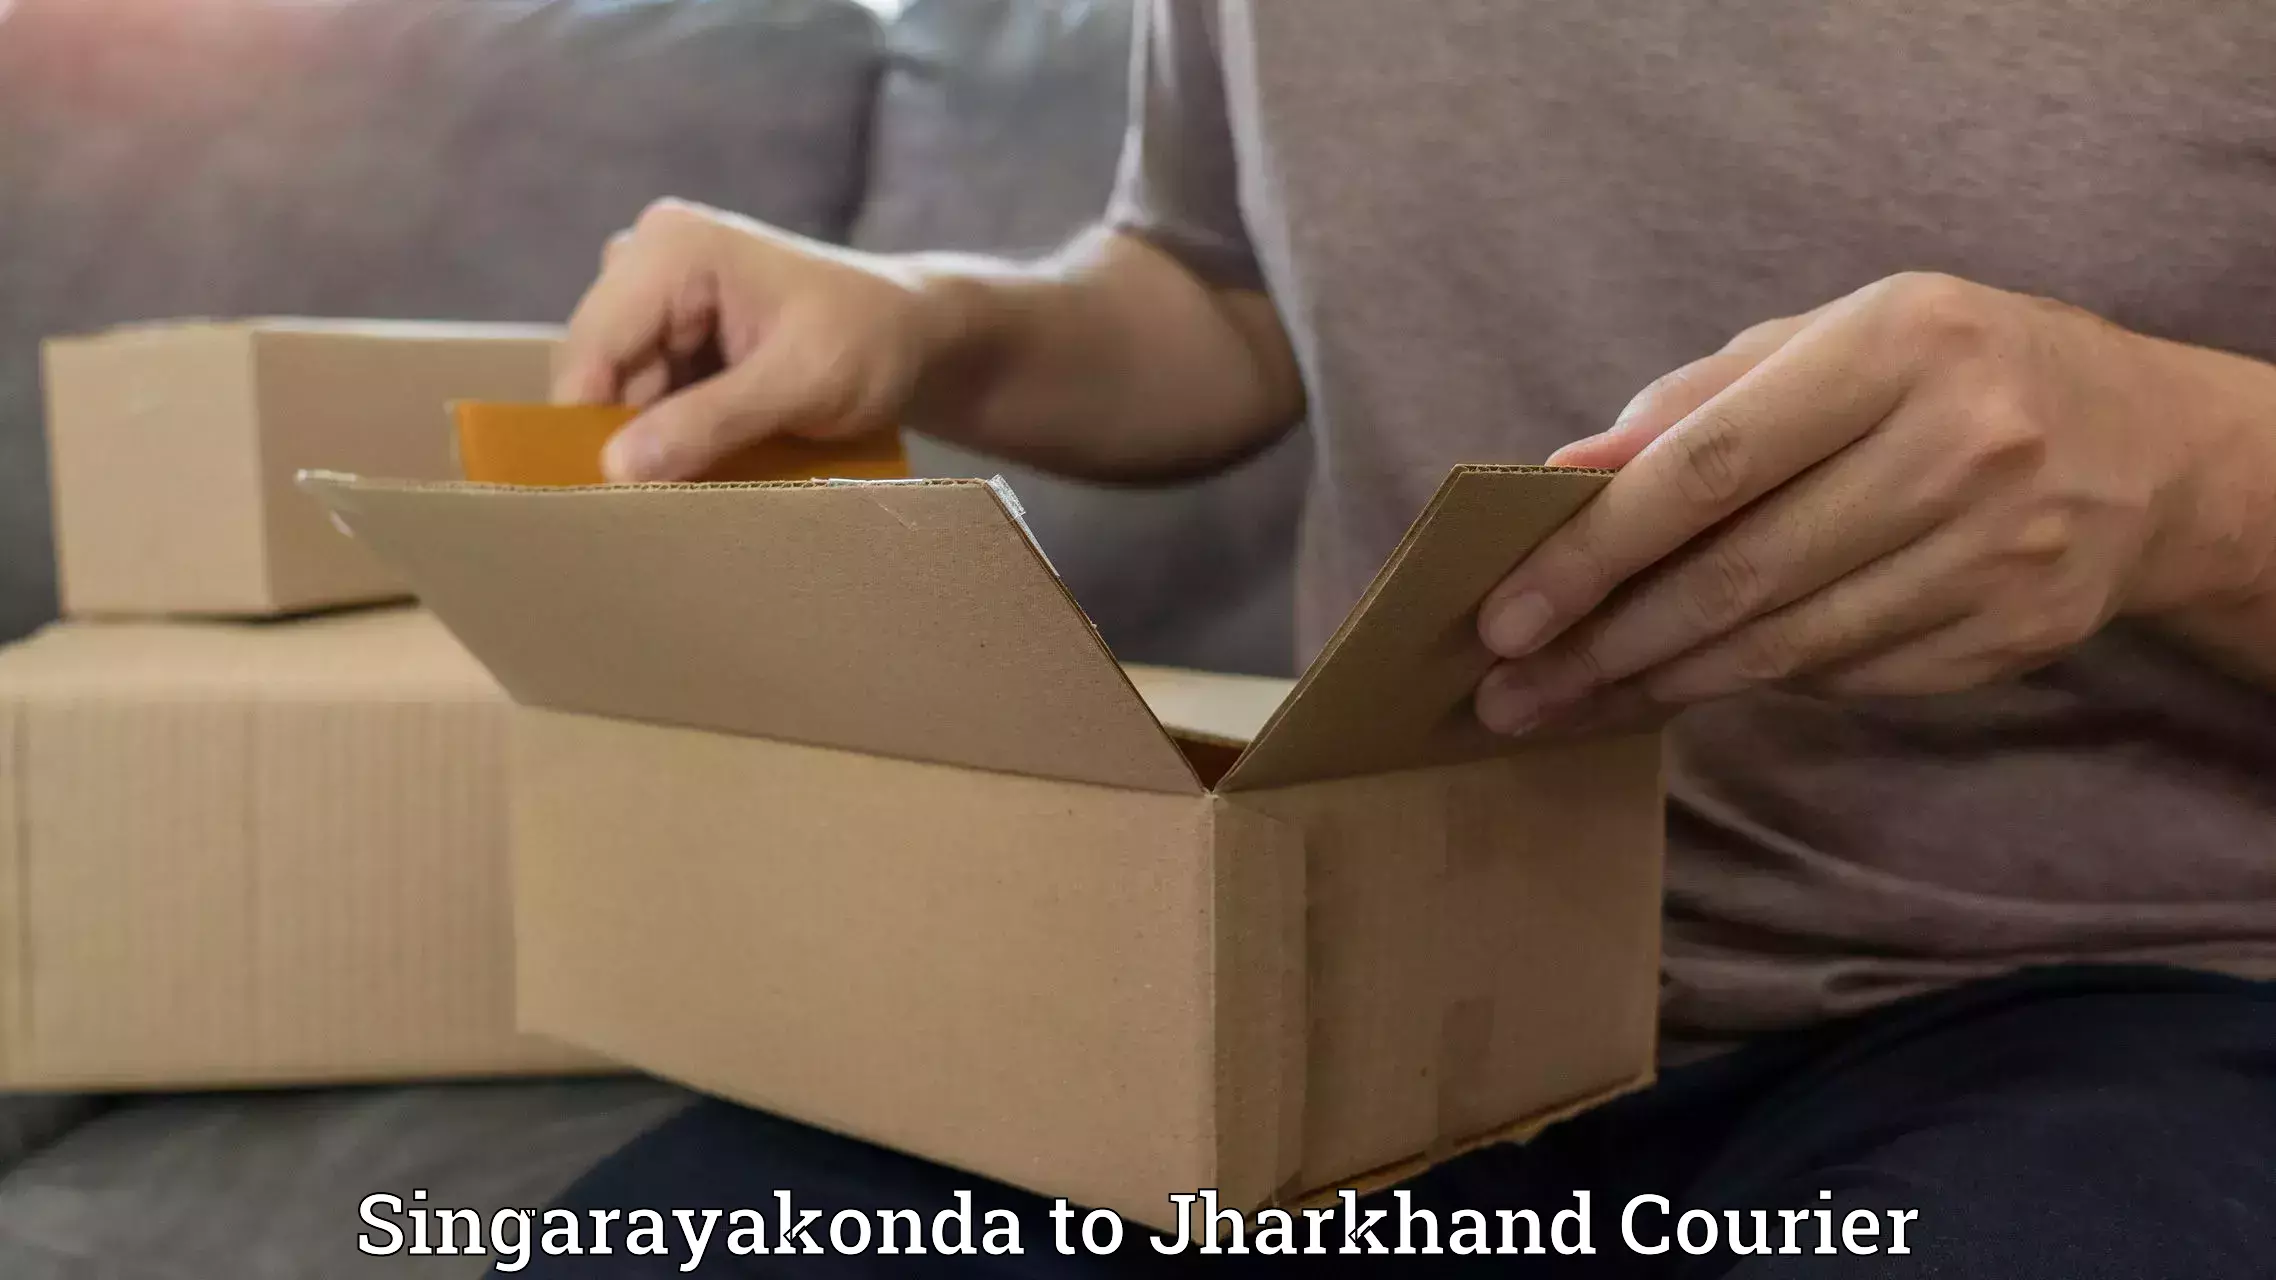 Full-service courier options Singarayakonda to Chakradharpur